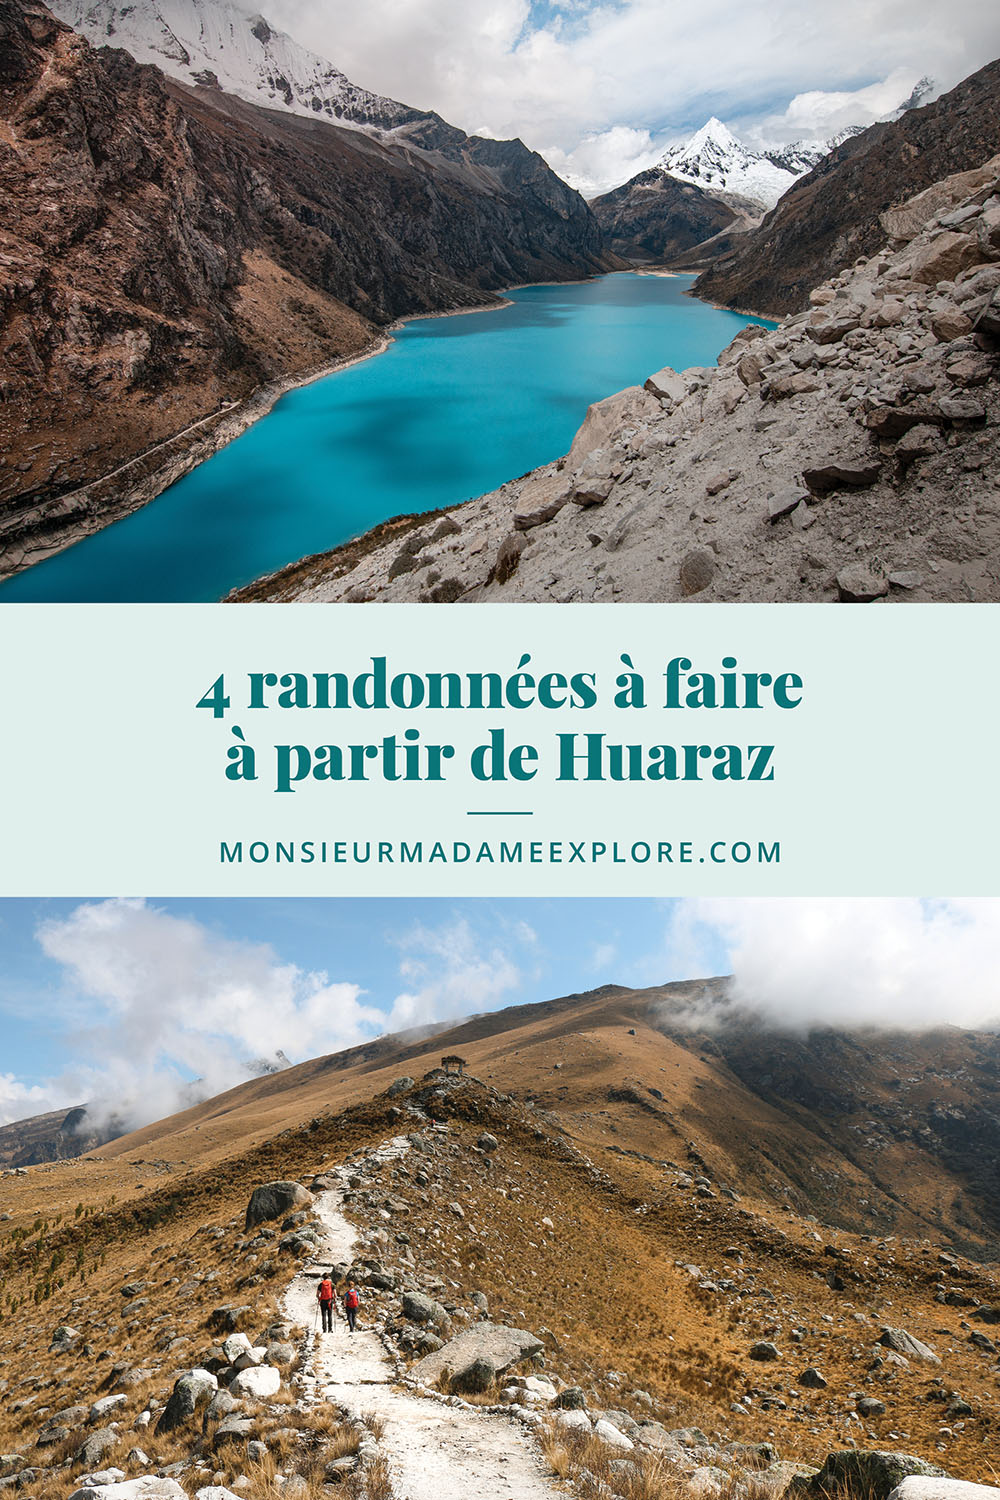 4 randonnées à faire à partir de Huaraz, Monsieur+Madame Explore, Blogue de voyage, Pérou / Hikes to do from Huaraz, Peru